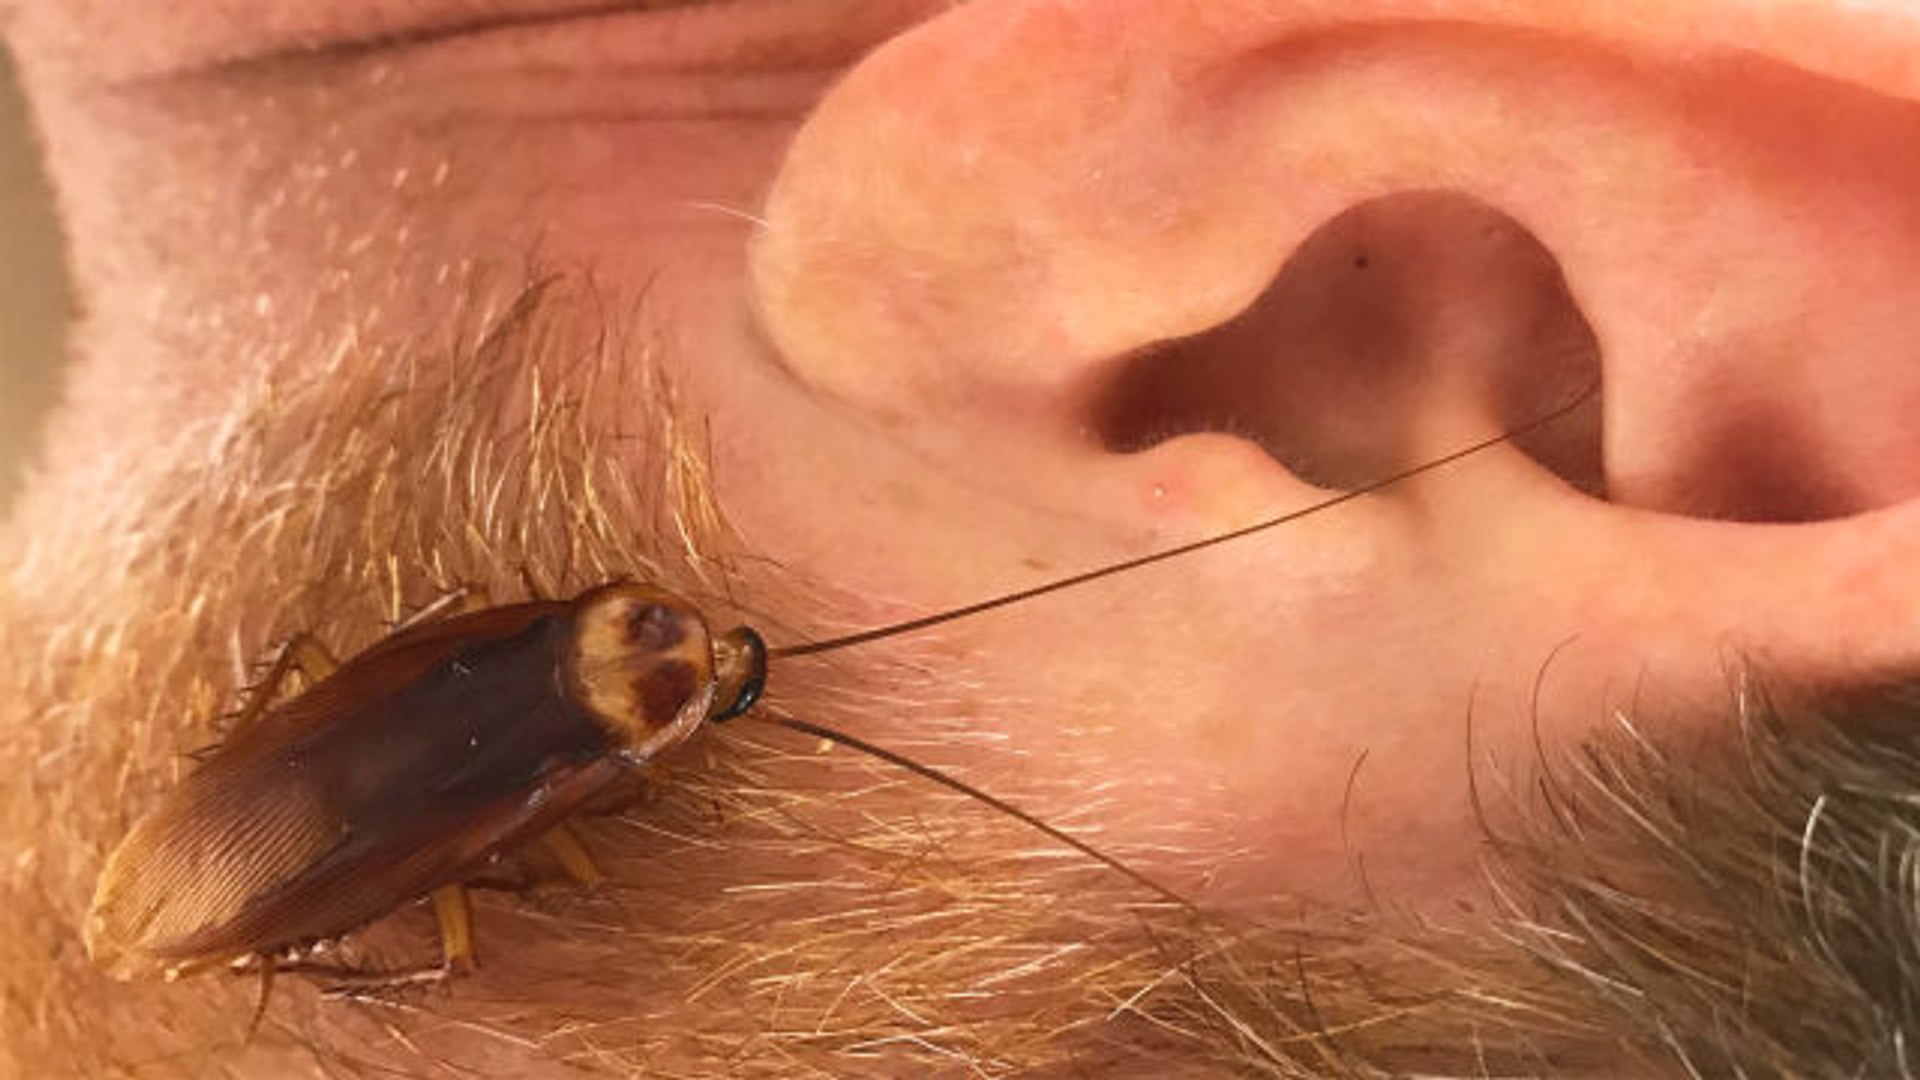 Cockroach In Ear , HD Wallpaper & Backgrounds